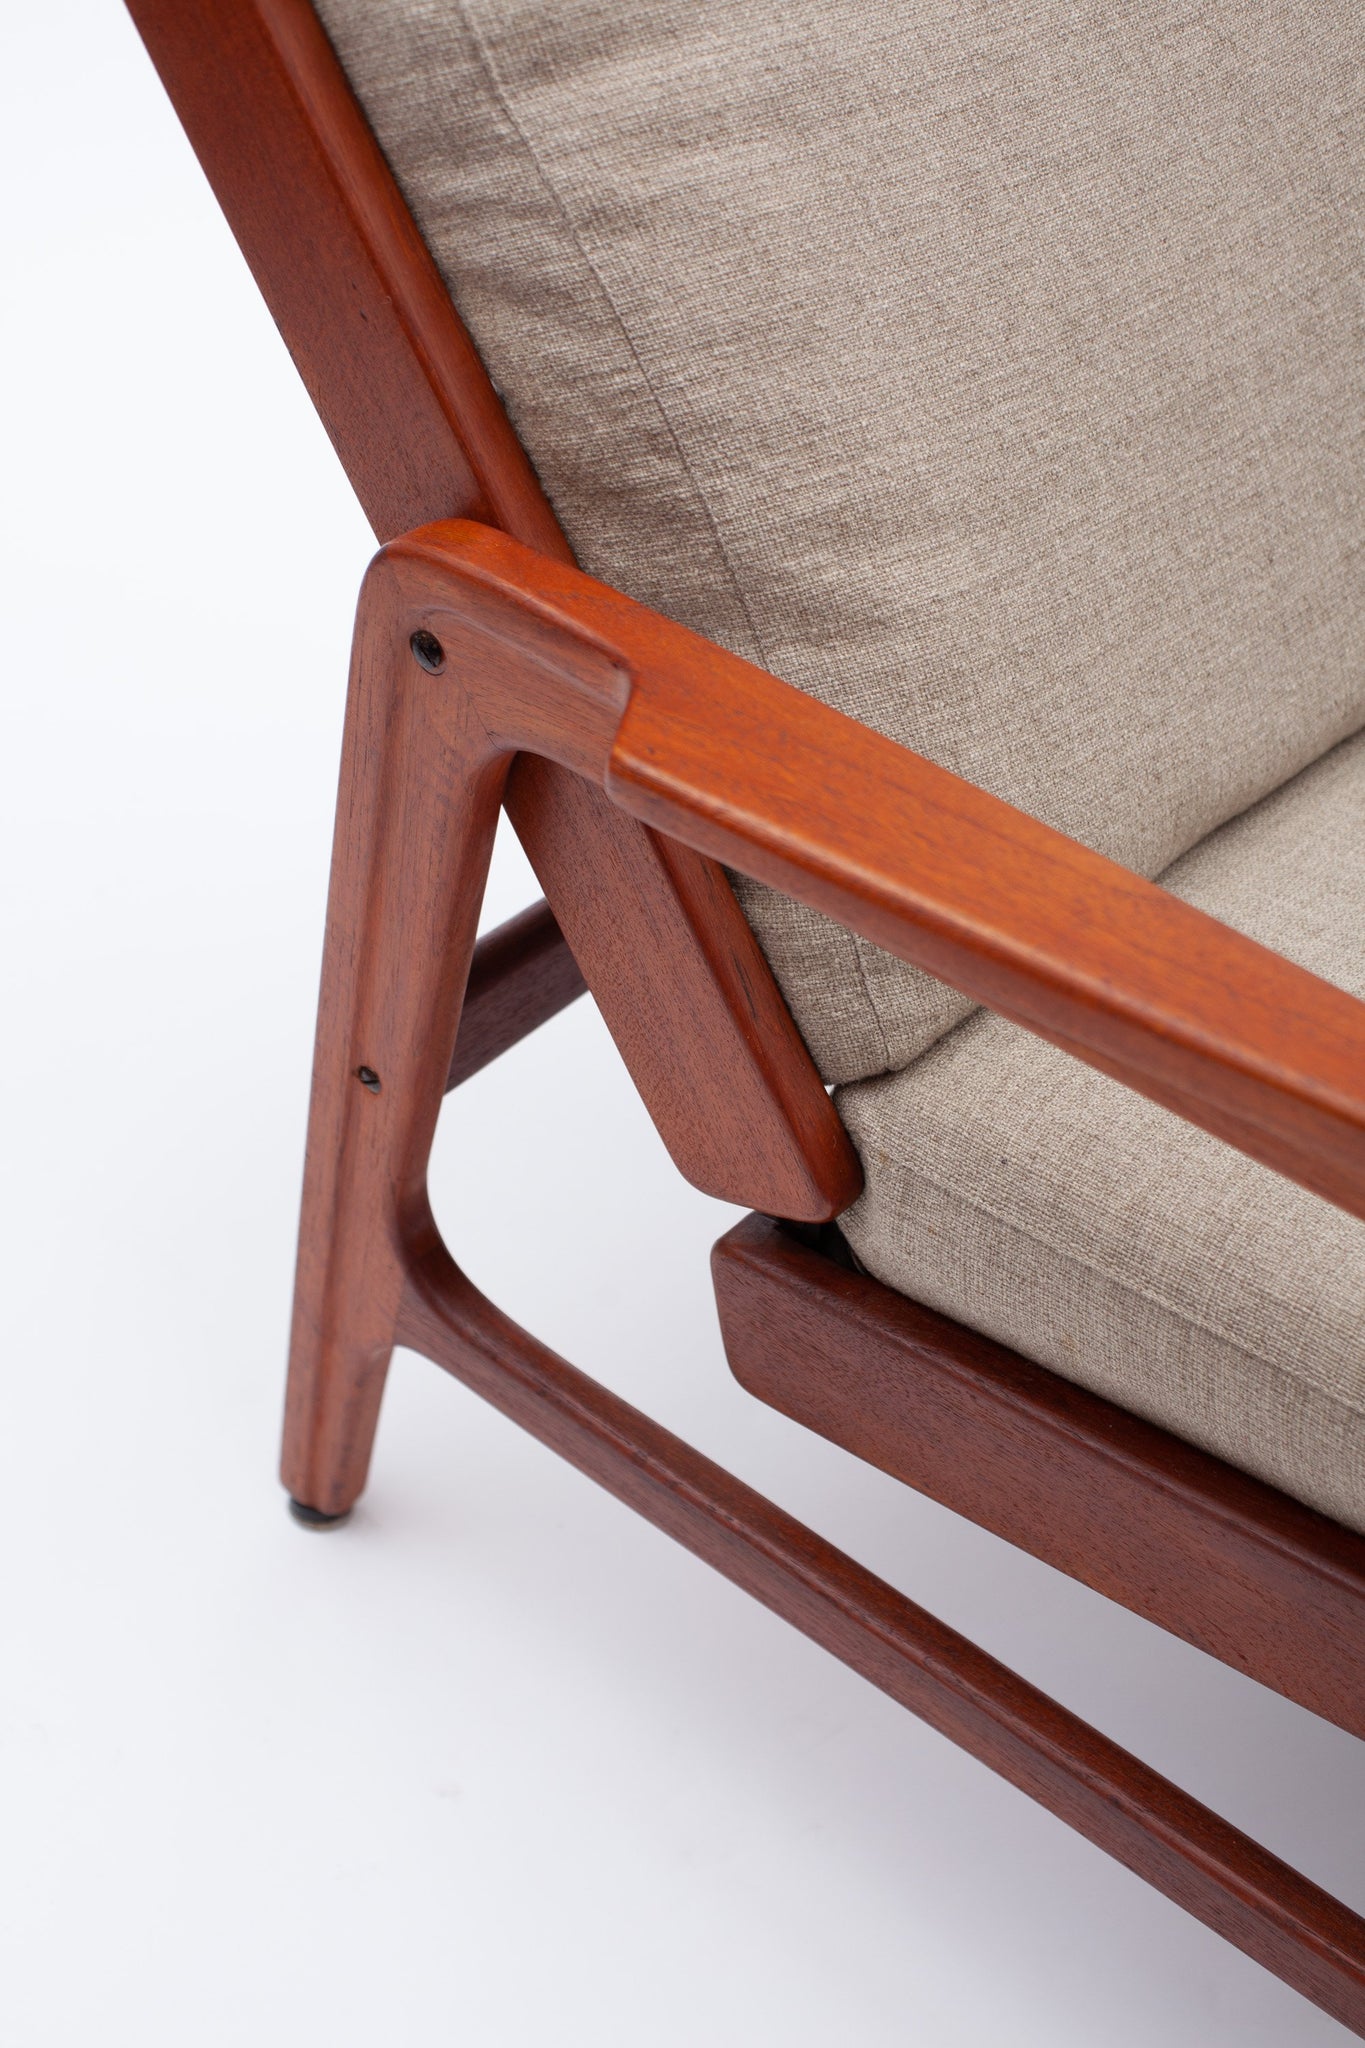 Dänischer Lounge Chair von Kai Kristiansen